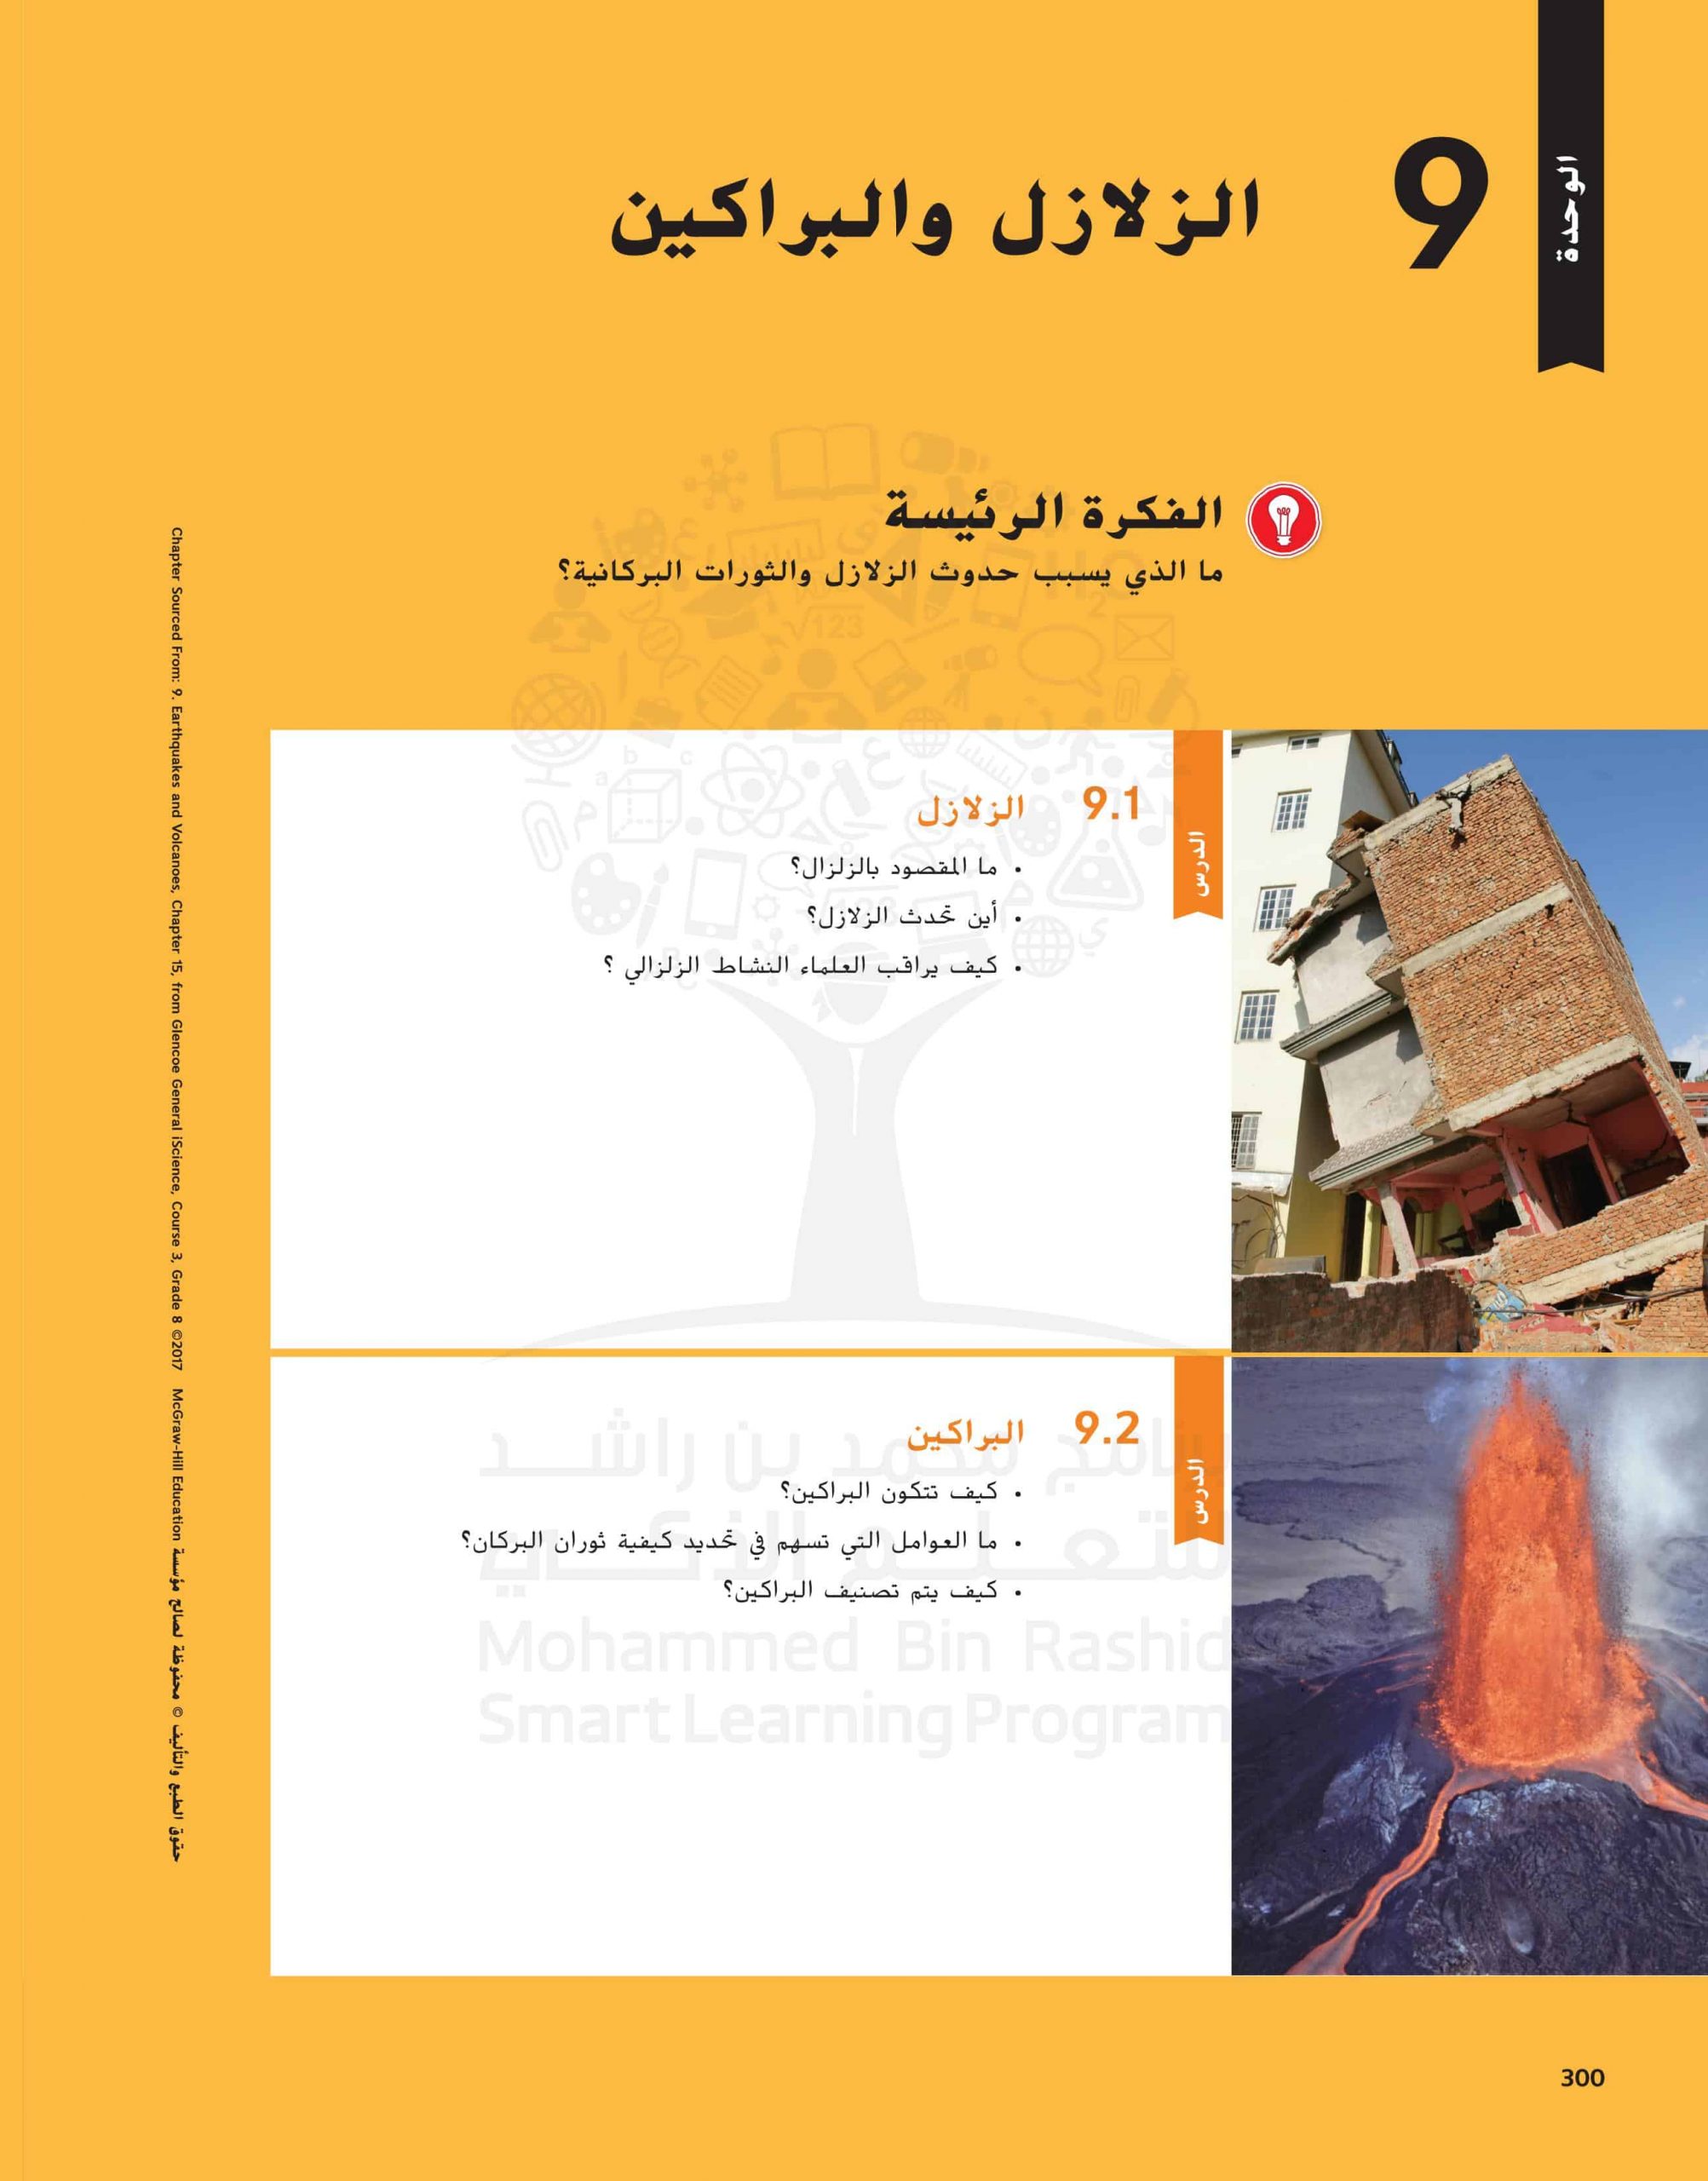 كتاب الطالب وحدة الزلازل والبراكين الفصل الدراسي الثالث 2020-2021 الصف الثامن مادة العلوم المتكاملة 